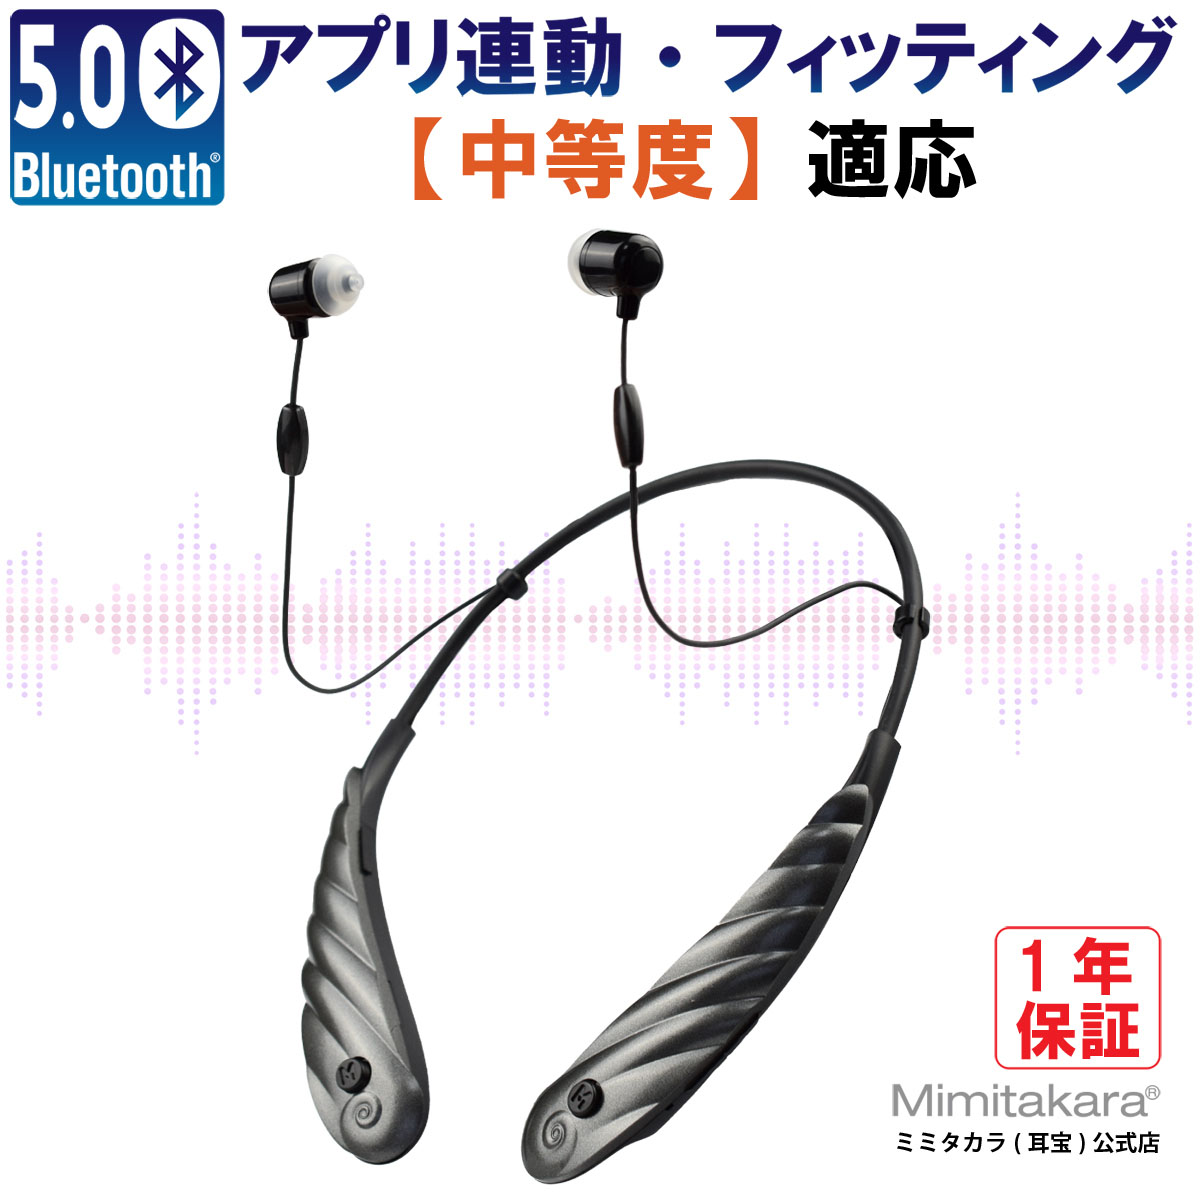 集音器 1個入【Bluetooth5.0・アプリ連動・補聴器レベルの音質